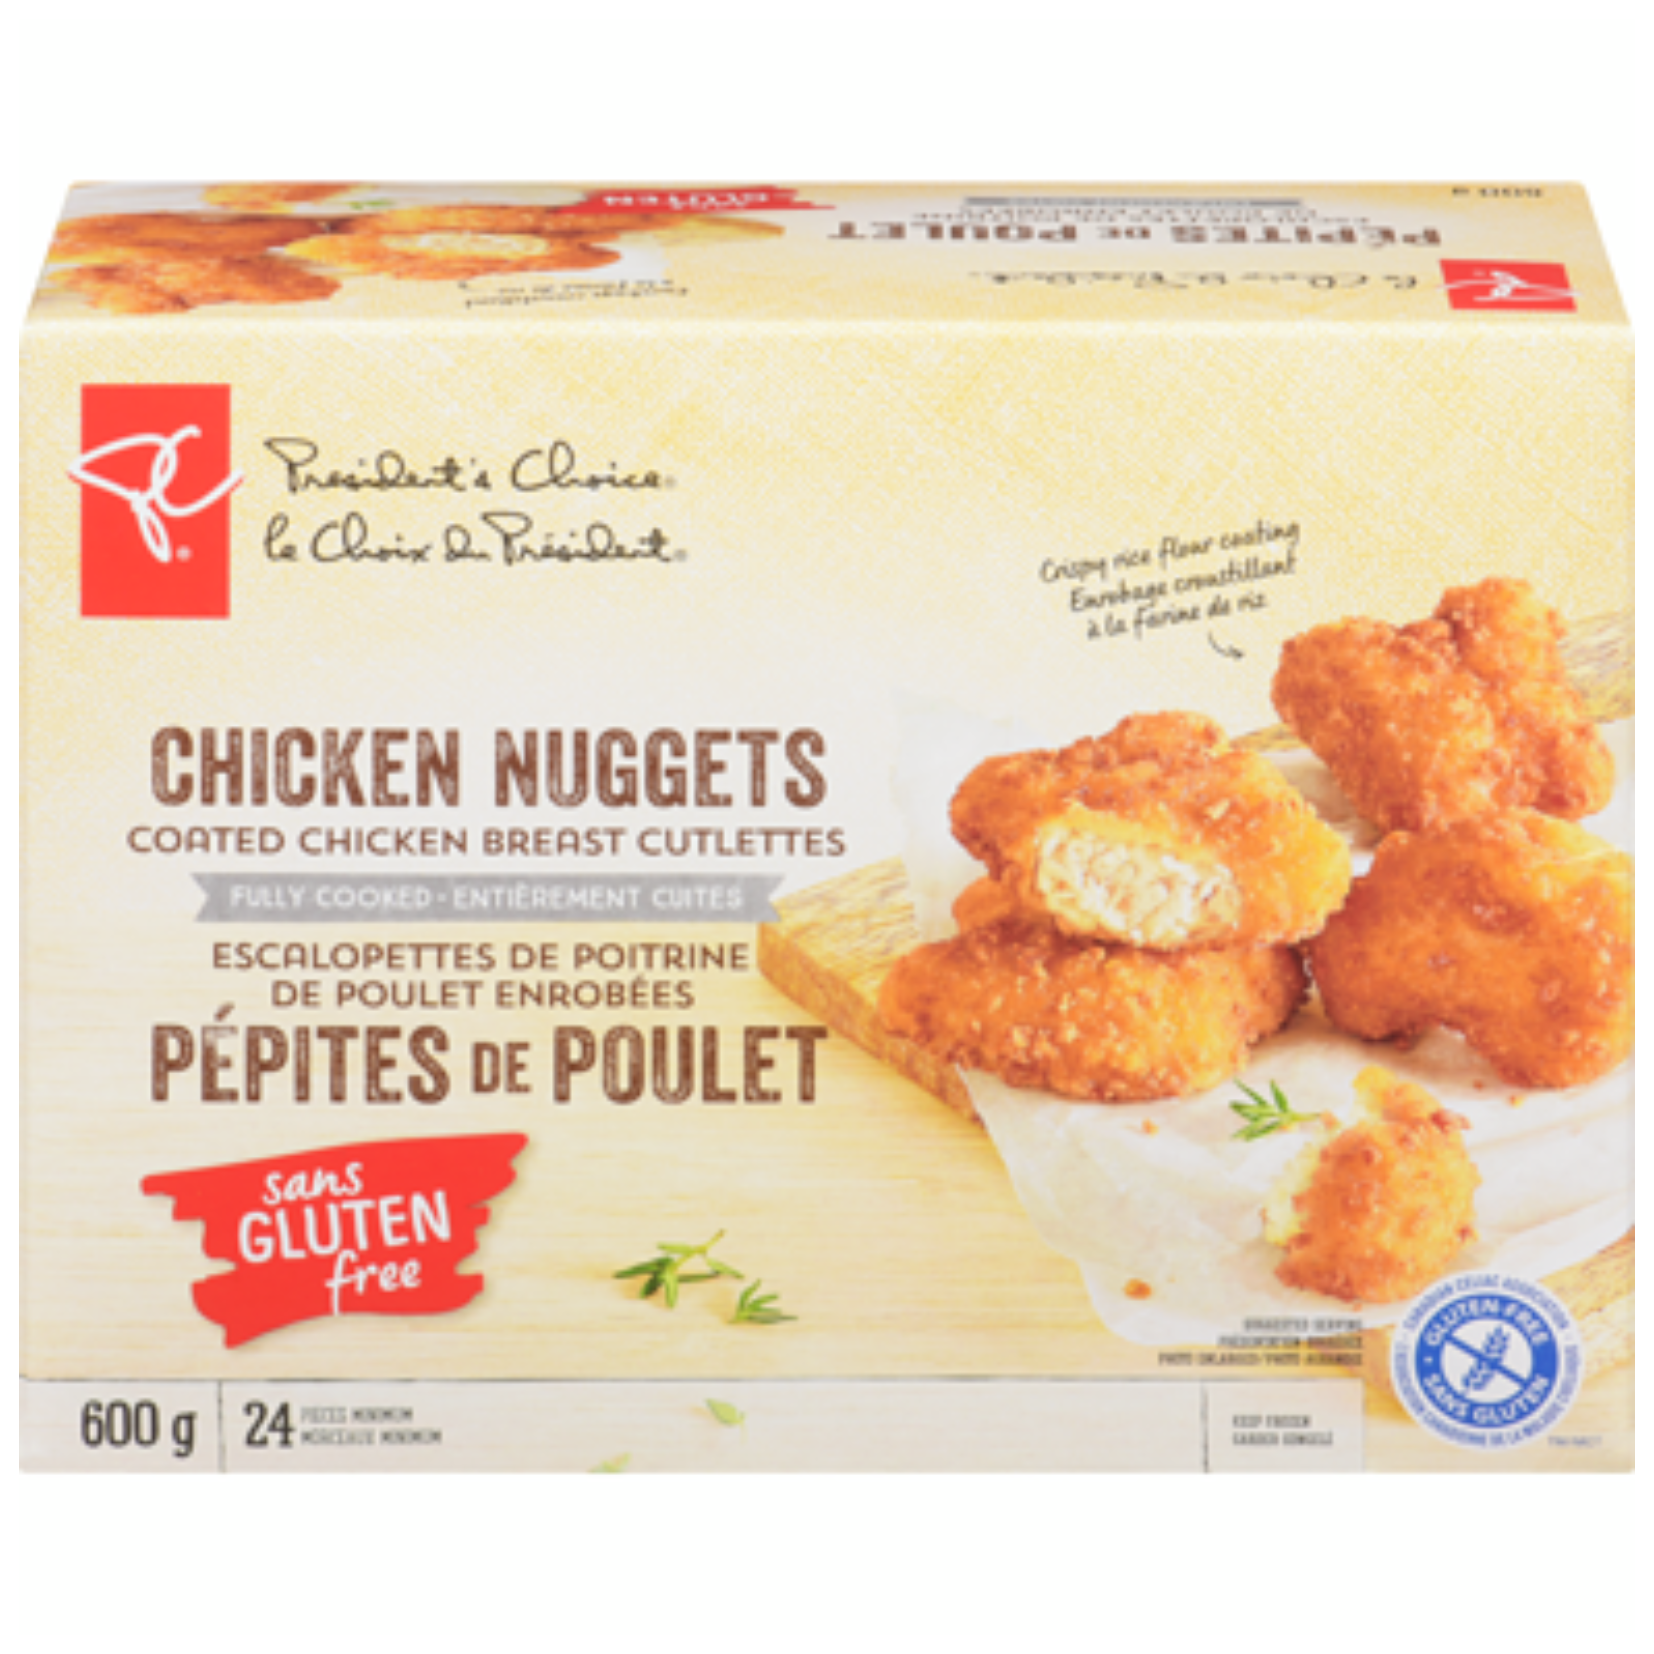 President's Choice Gluten Free Chicken Nuggets 600g